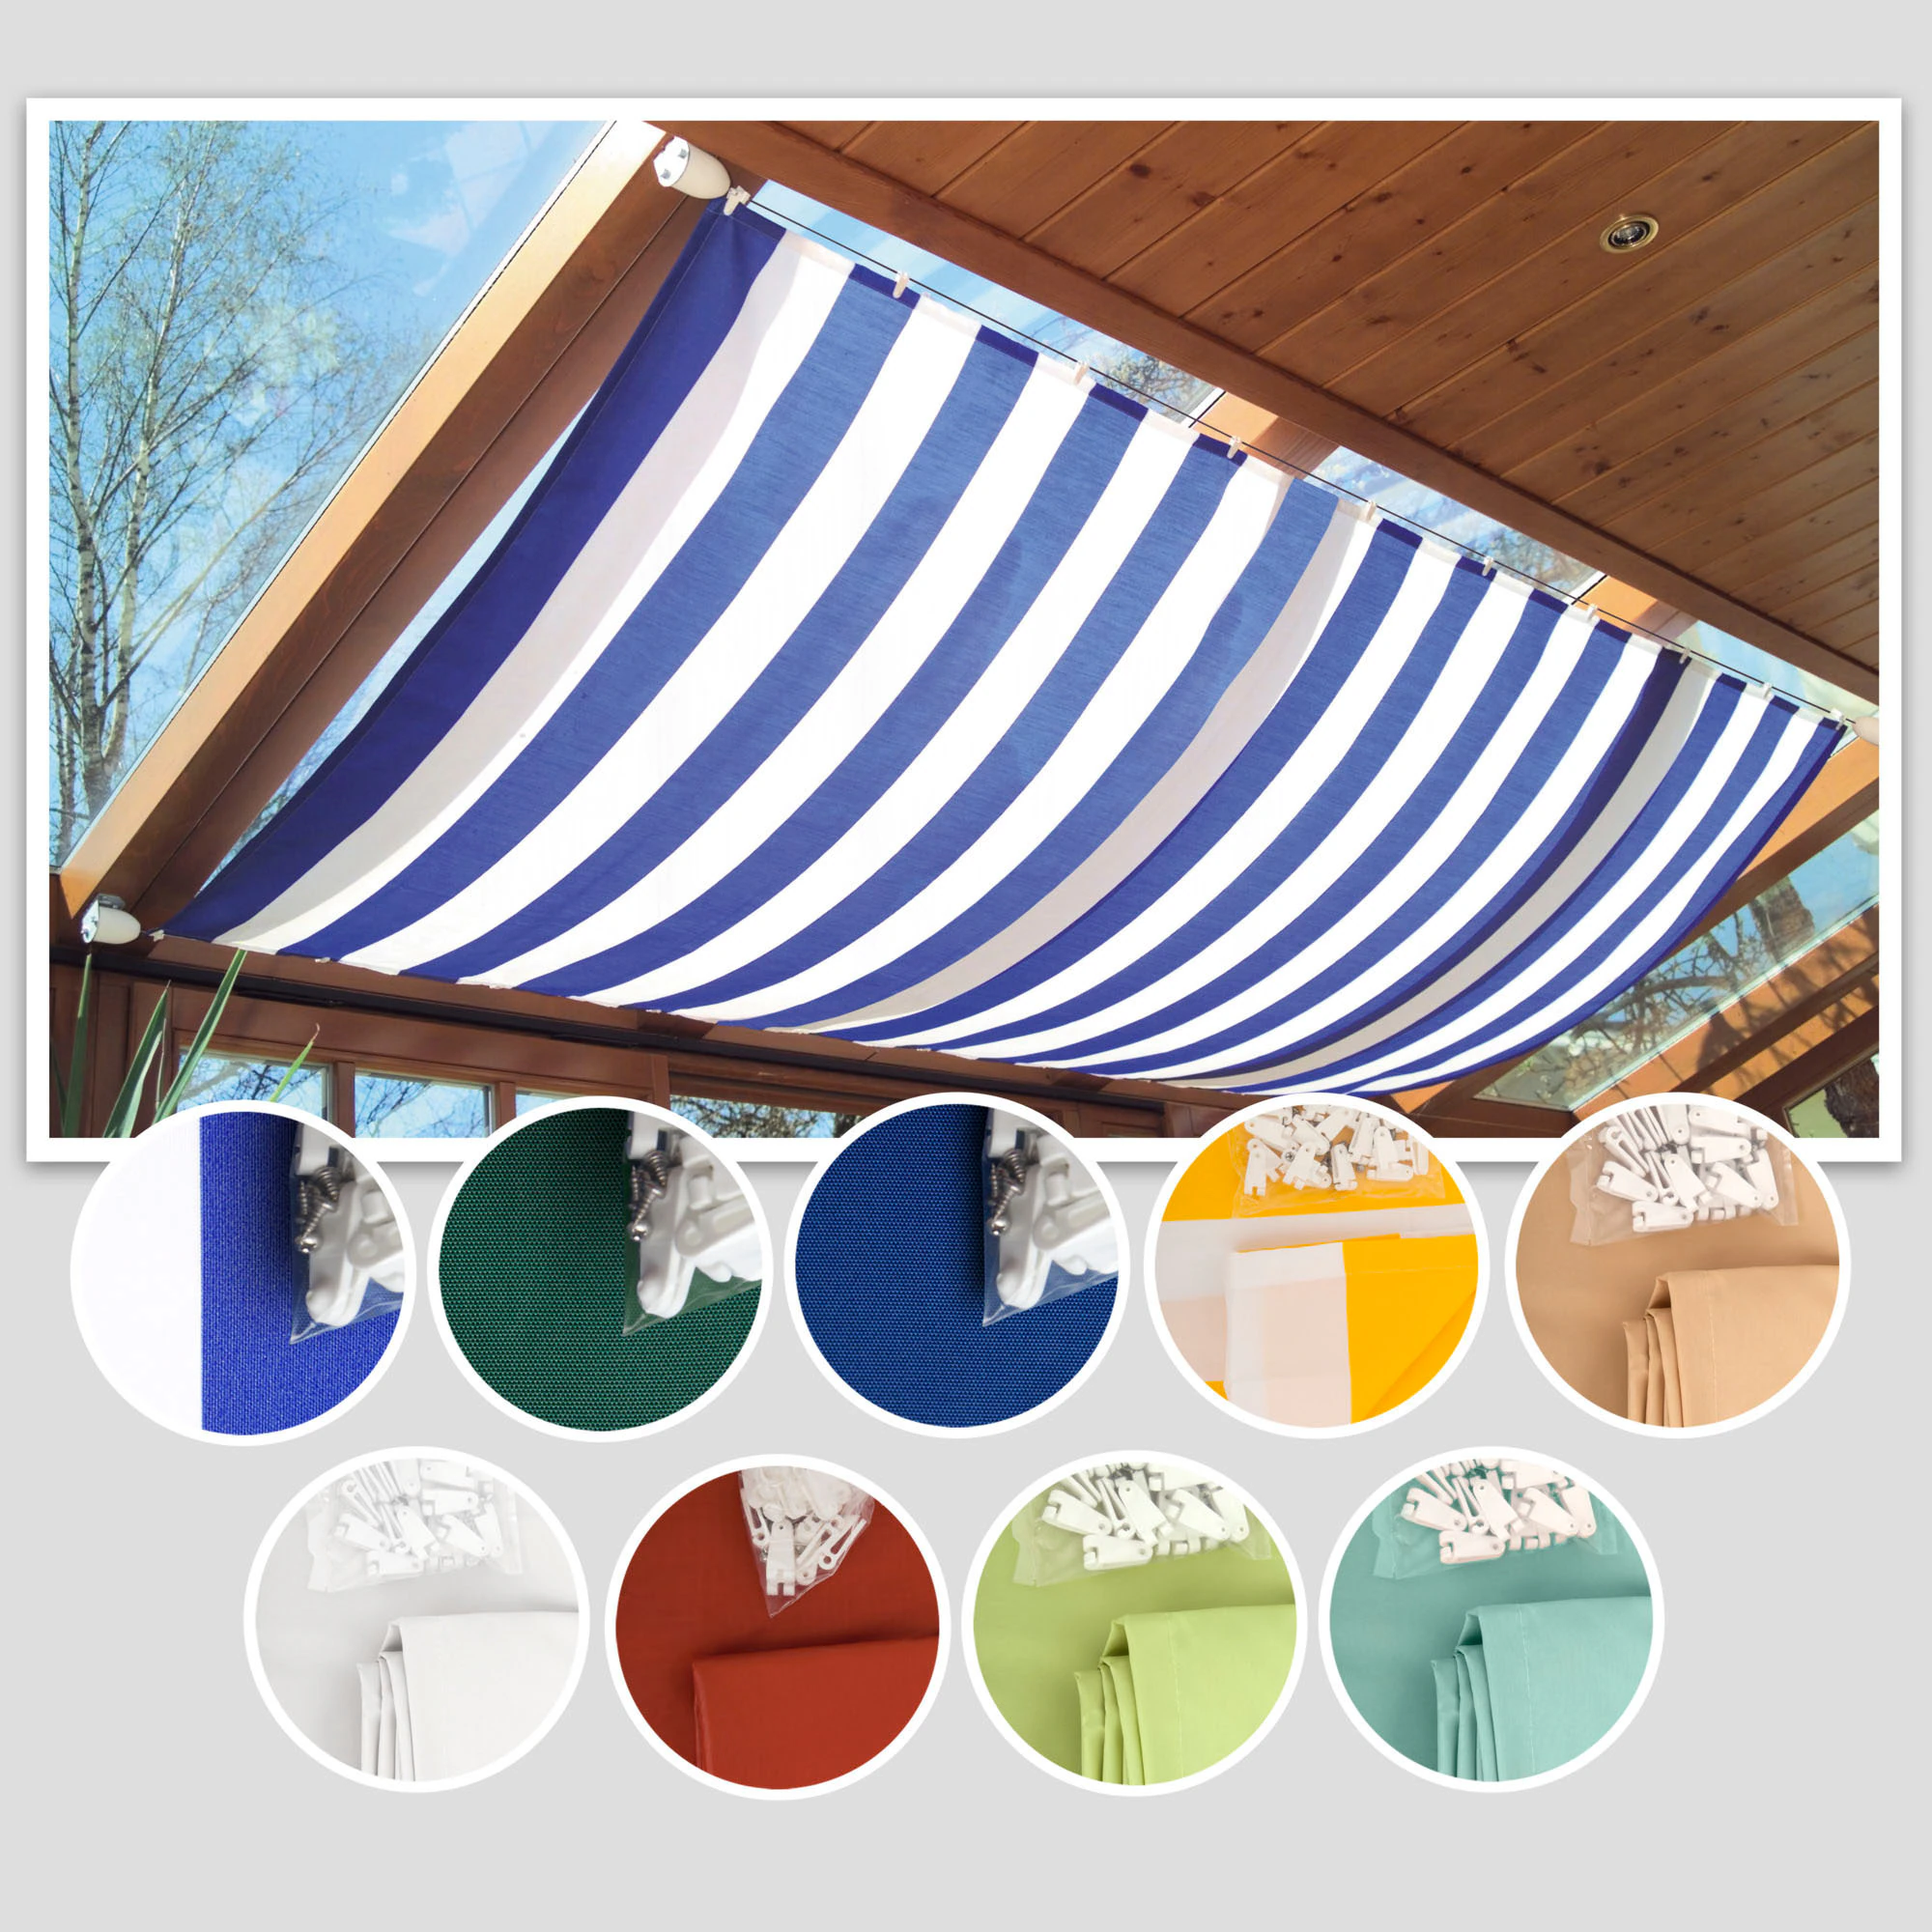 Windhager Seilspannsonnensegel, Sonnensegel für Seilspanntechnik, 2,7x1,4 m günstig online kaufen